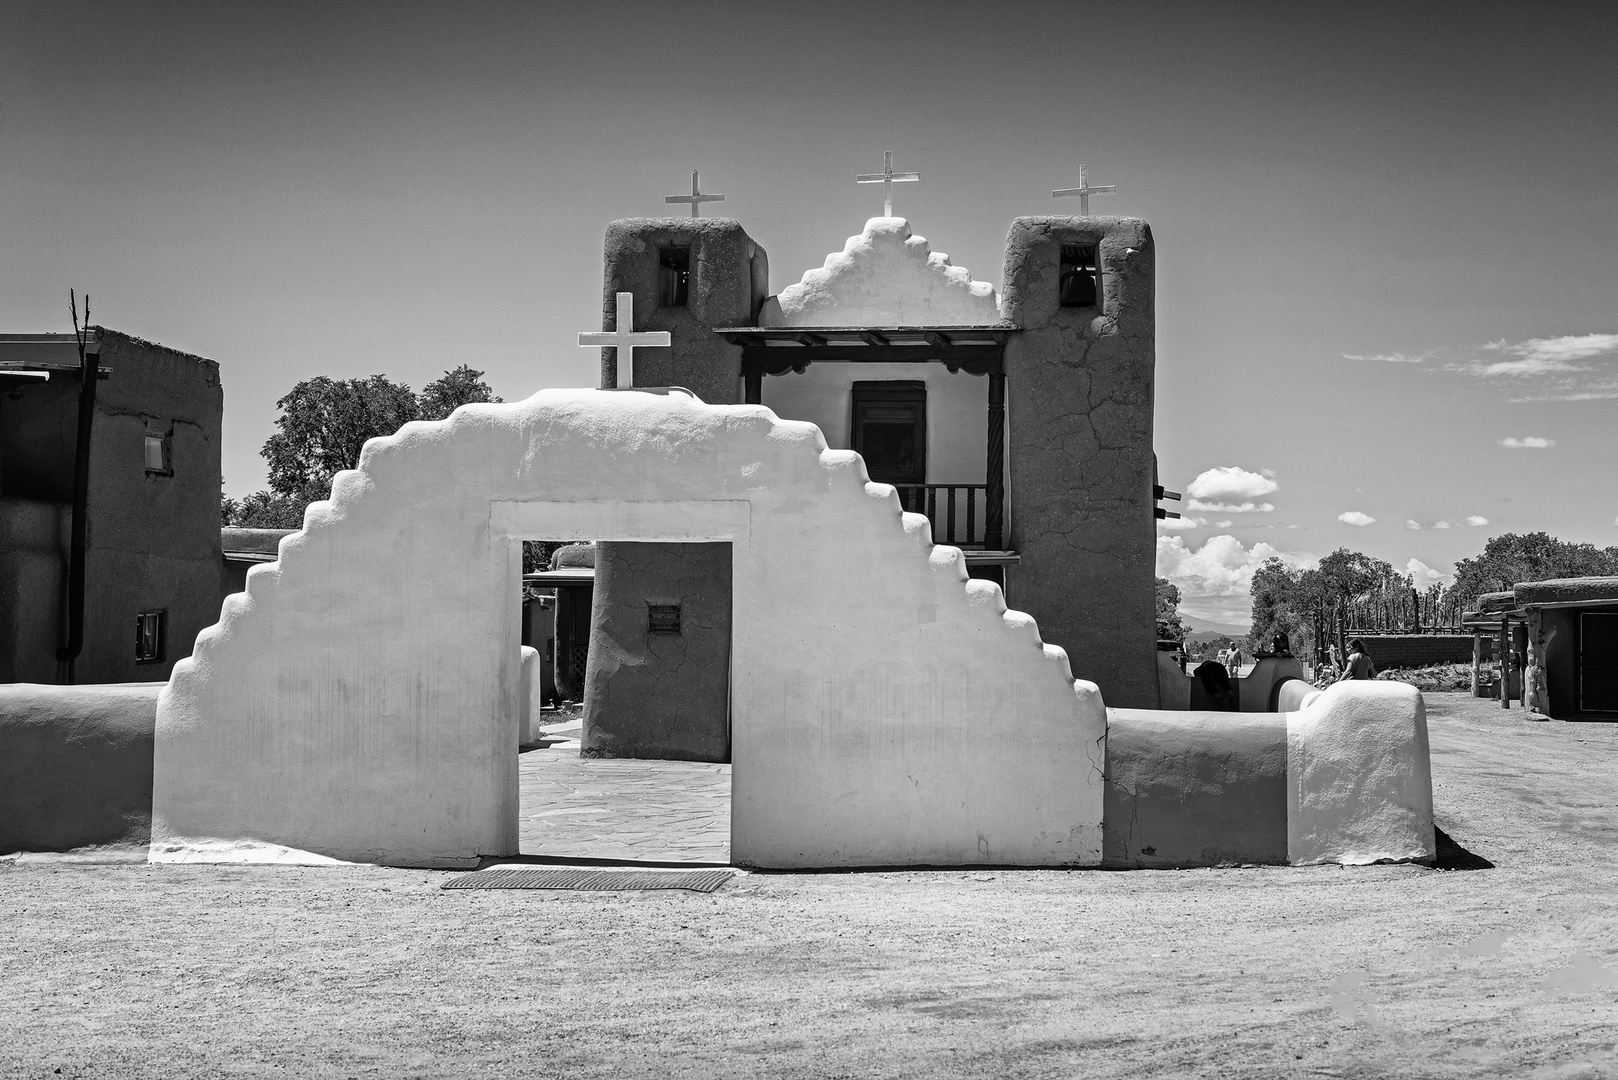 Taos pueblo New Mexico